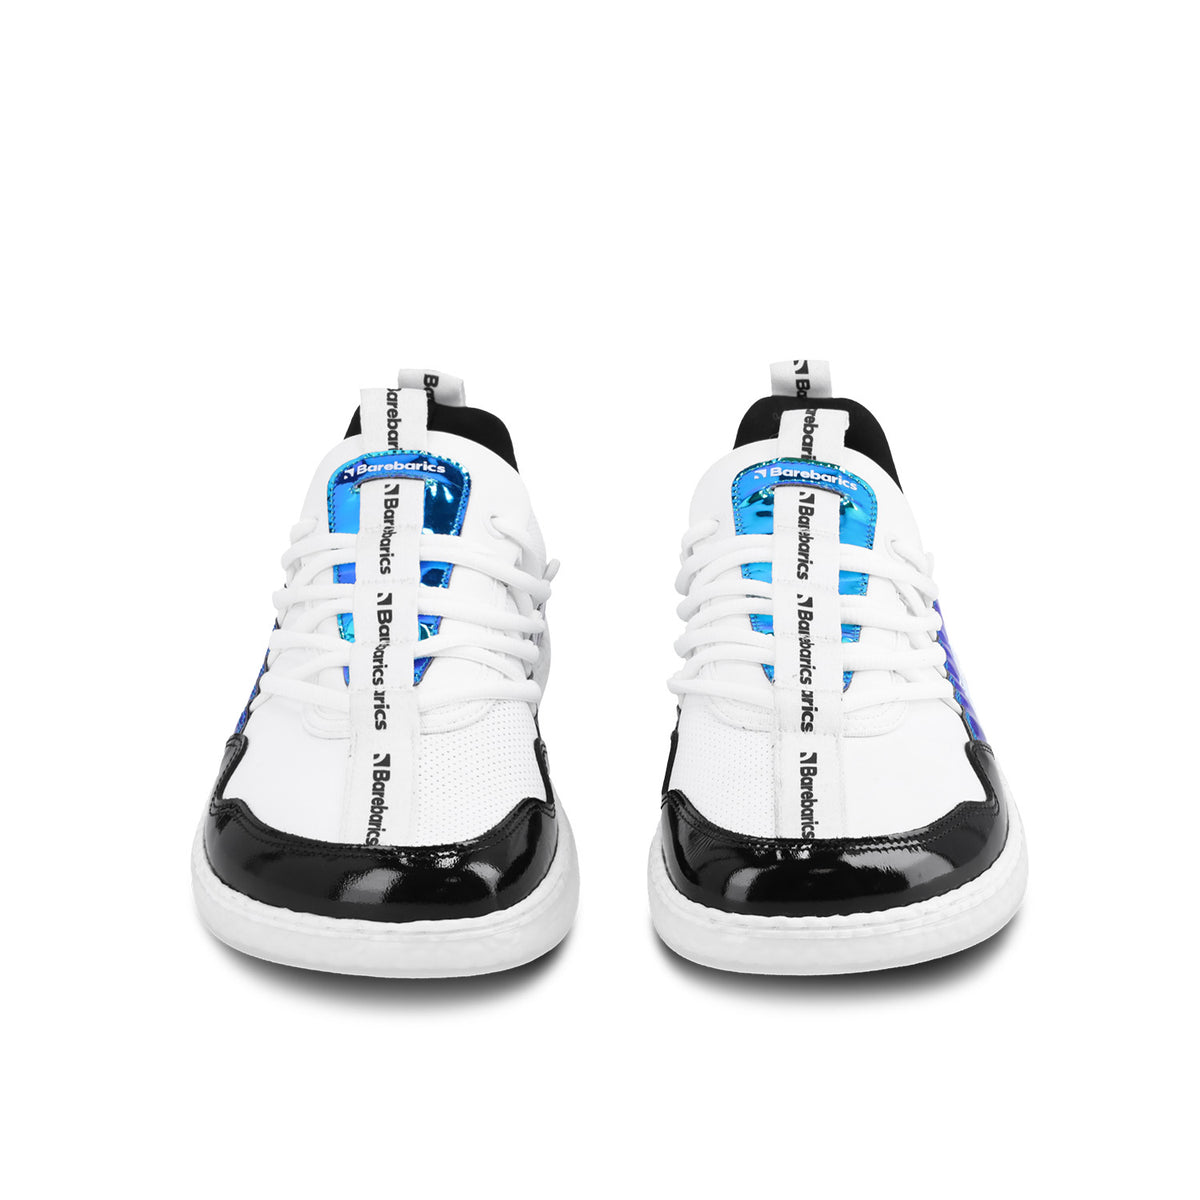 Barefoot Sneakers Barebarics Futura - Iridescent White 5  - OzBarefoot